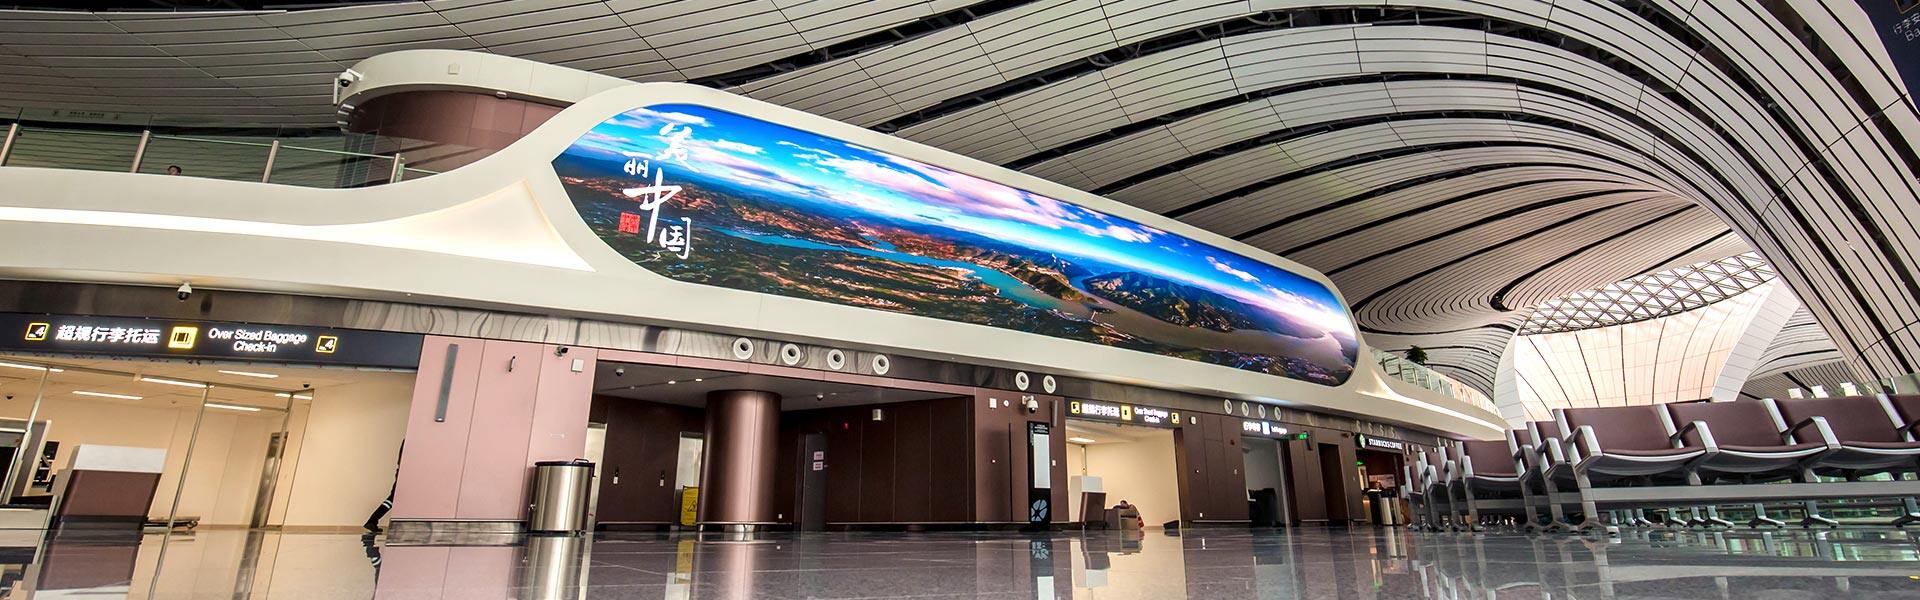 Крупные светодиодные экраны LianTronics поразили крупнейший в мире терминал международного аэропорта Дасин в Пекине